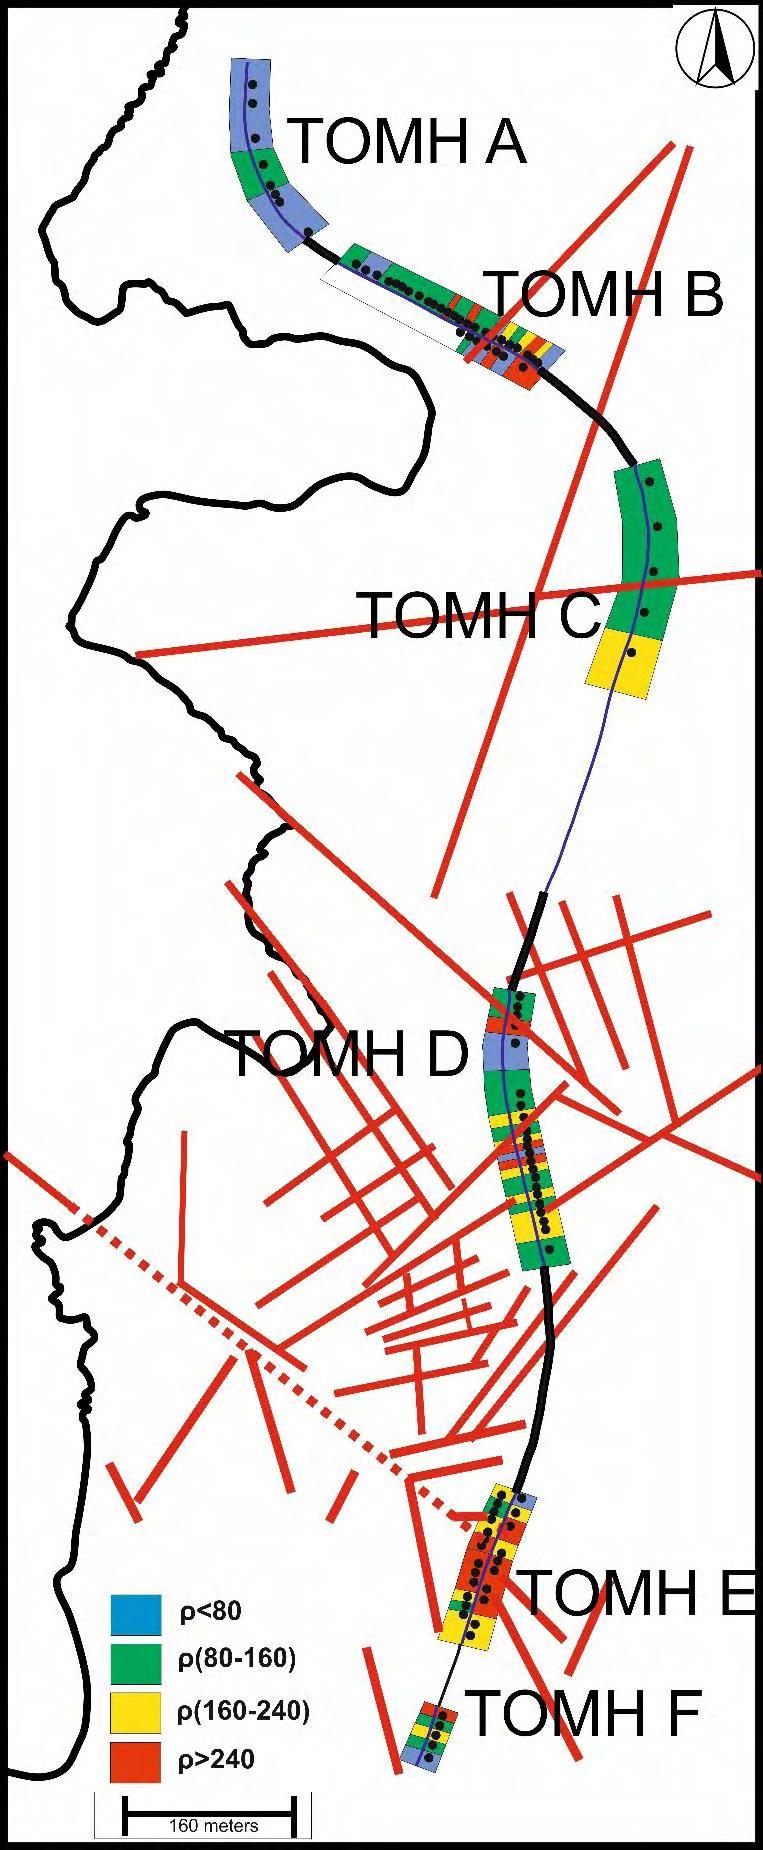 Εικόνα 5.2: Χάρτης της περιοχής μελέτης με έκθεση της πυκνότητας διακλάσεων για κάθε δειγματοληπτική θέση.